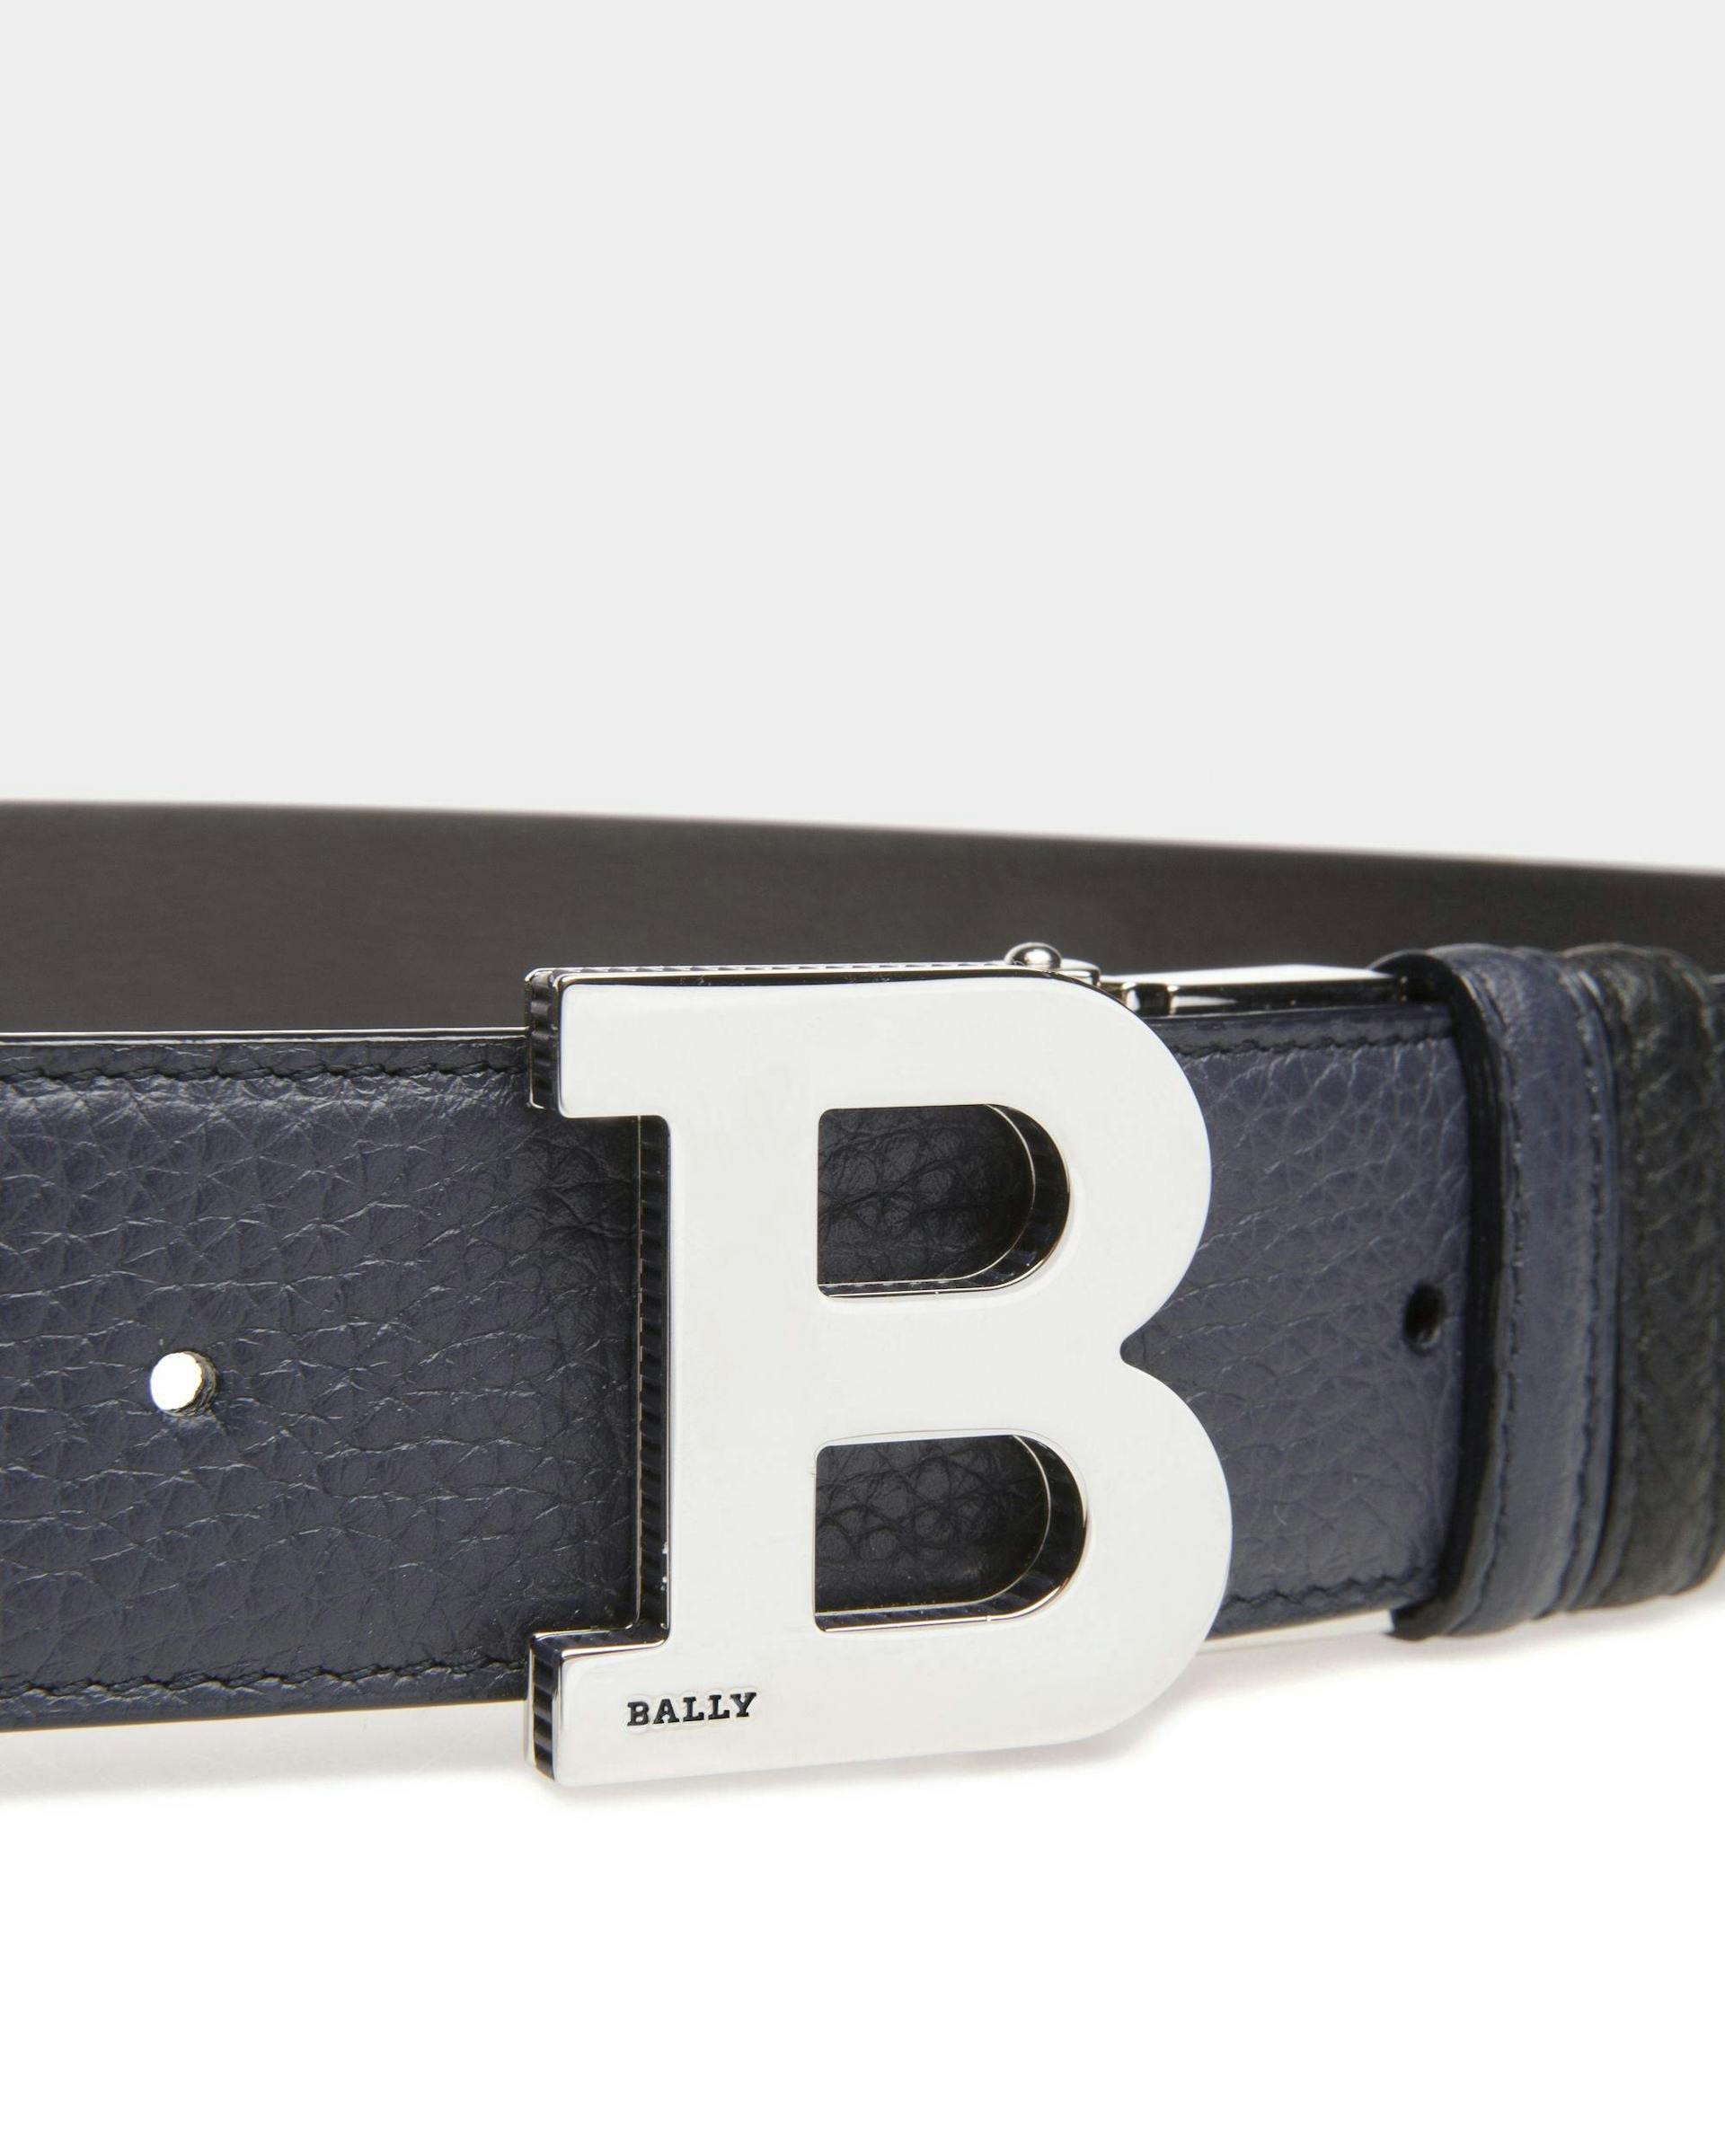 B Buckle Leather 35Mm Belt In Navy & Black - Men's - Bally - 03